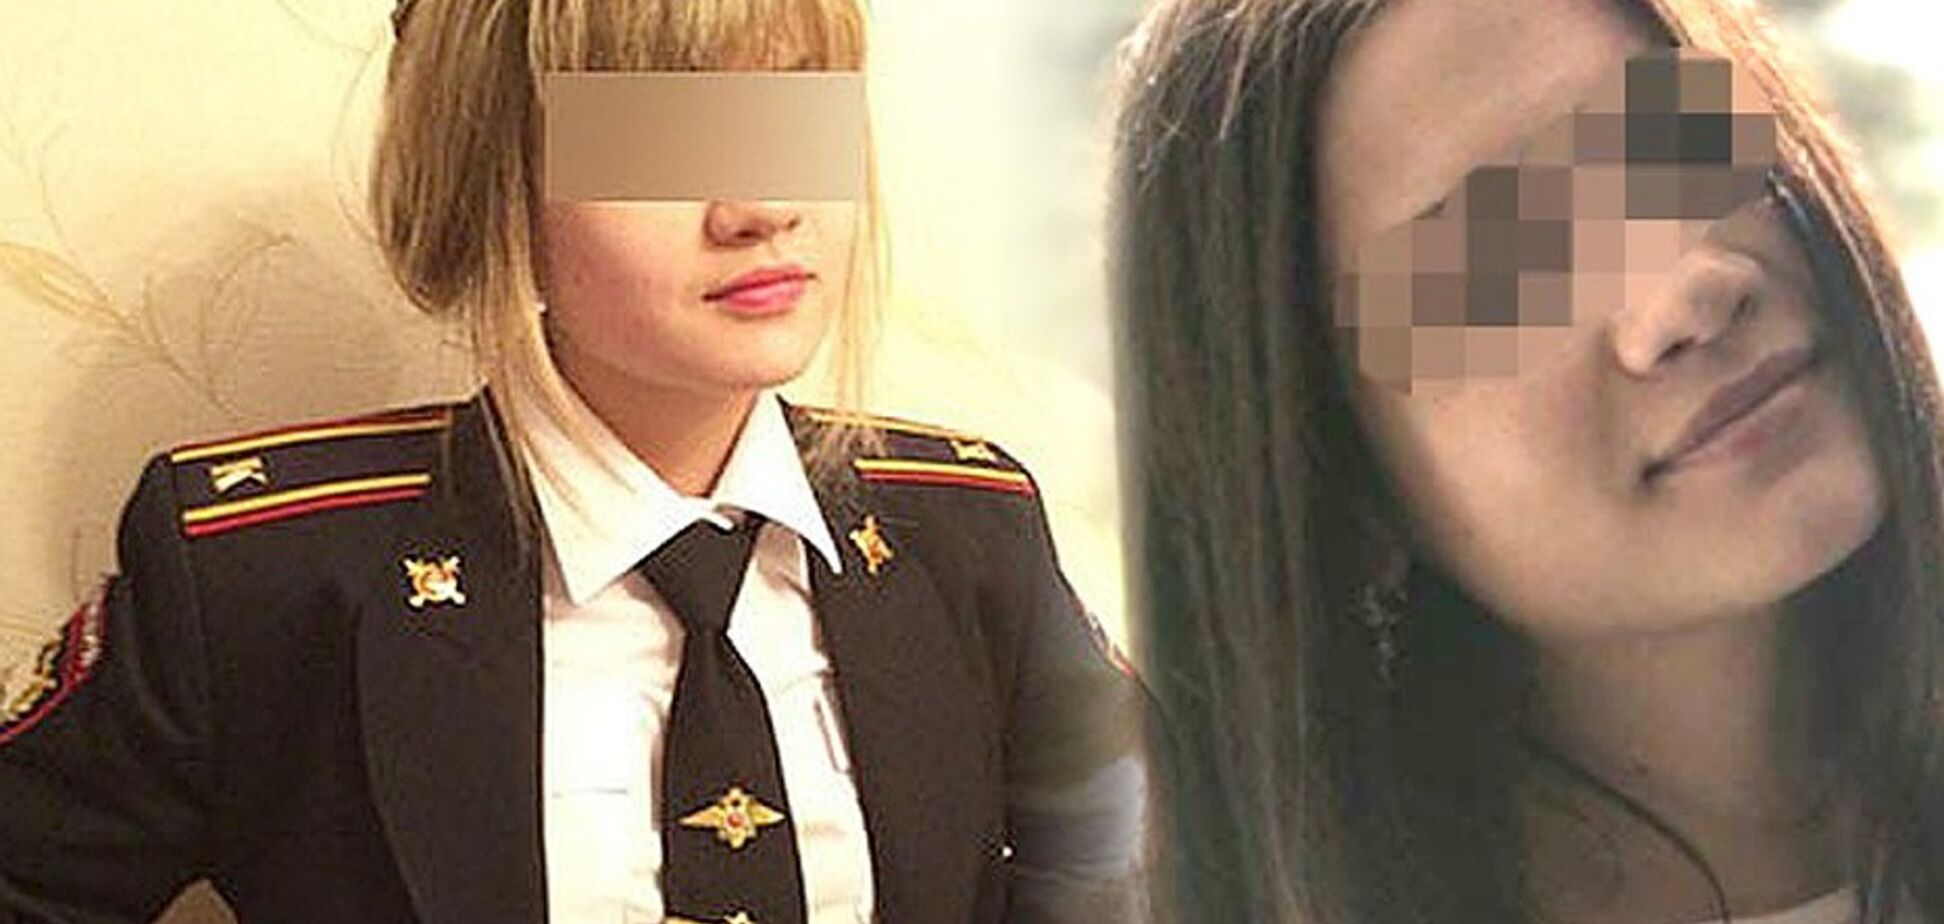  ''Штаны снимала'': дело изнасилованной полицейской в России получило новый поворот